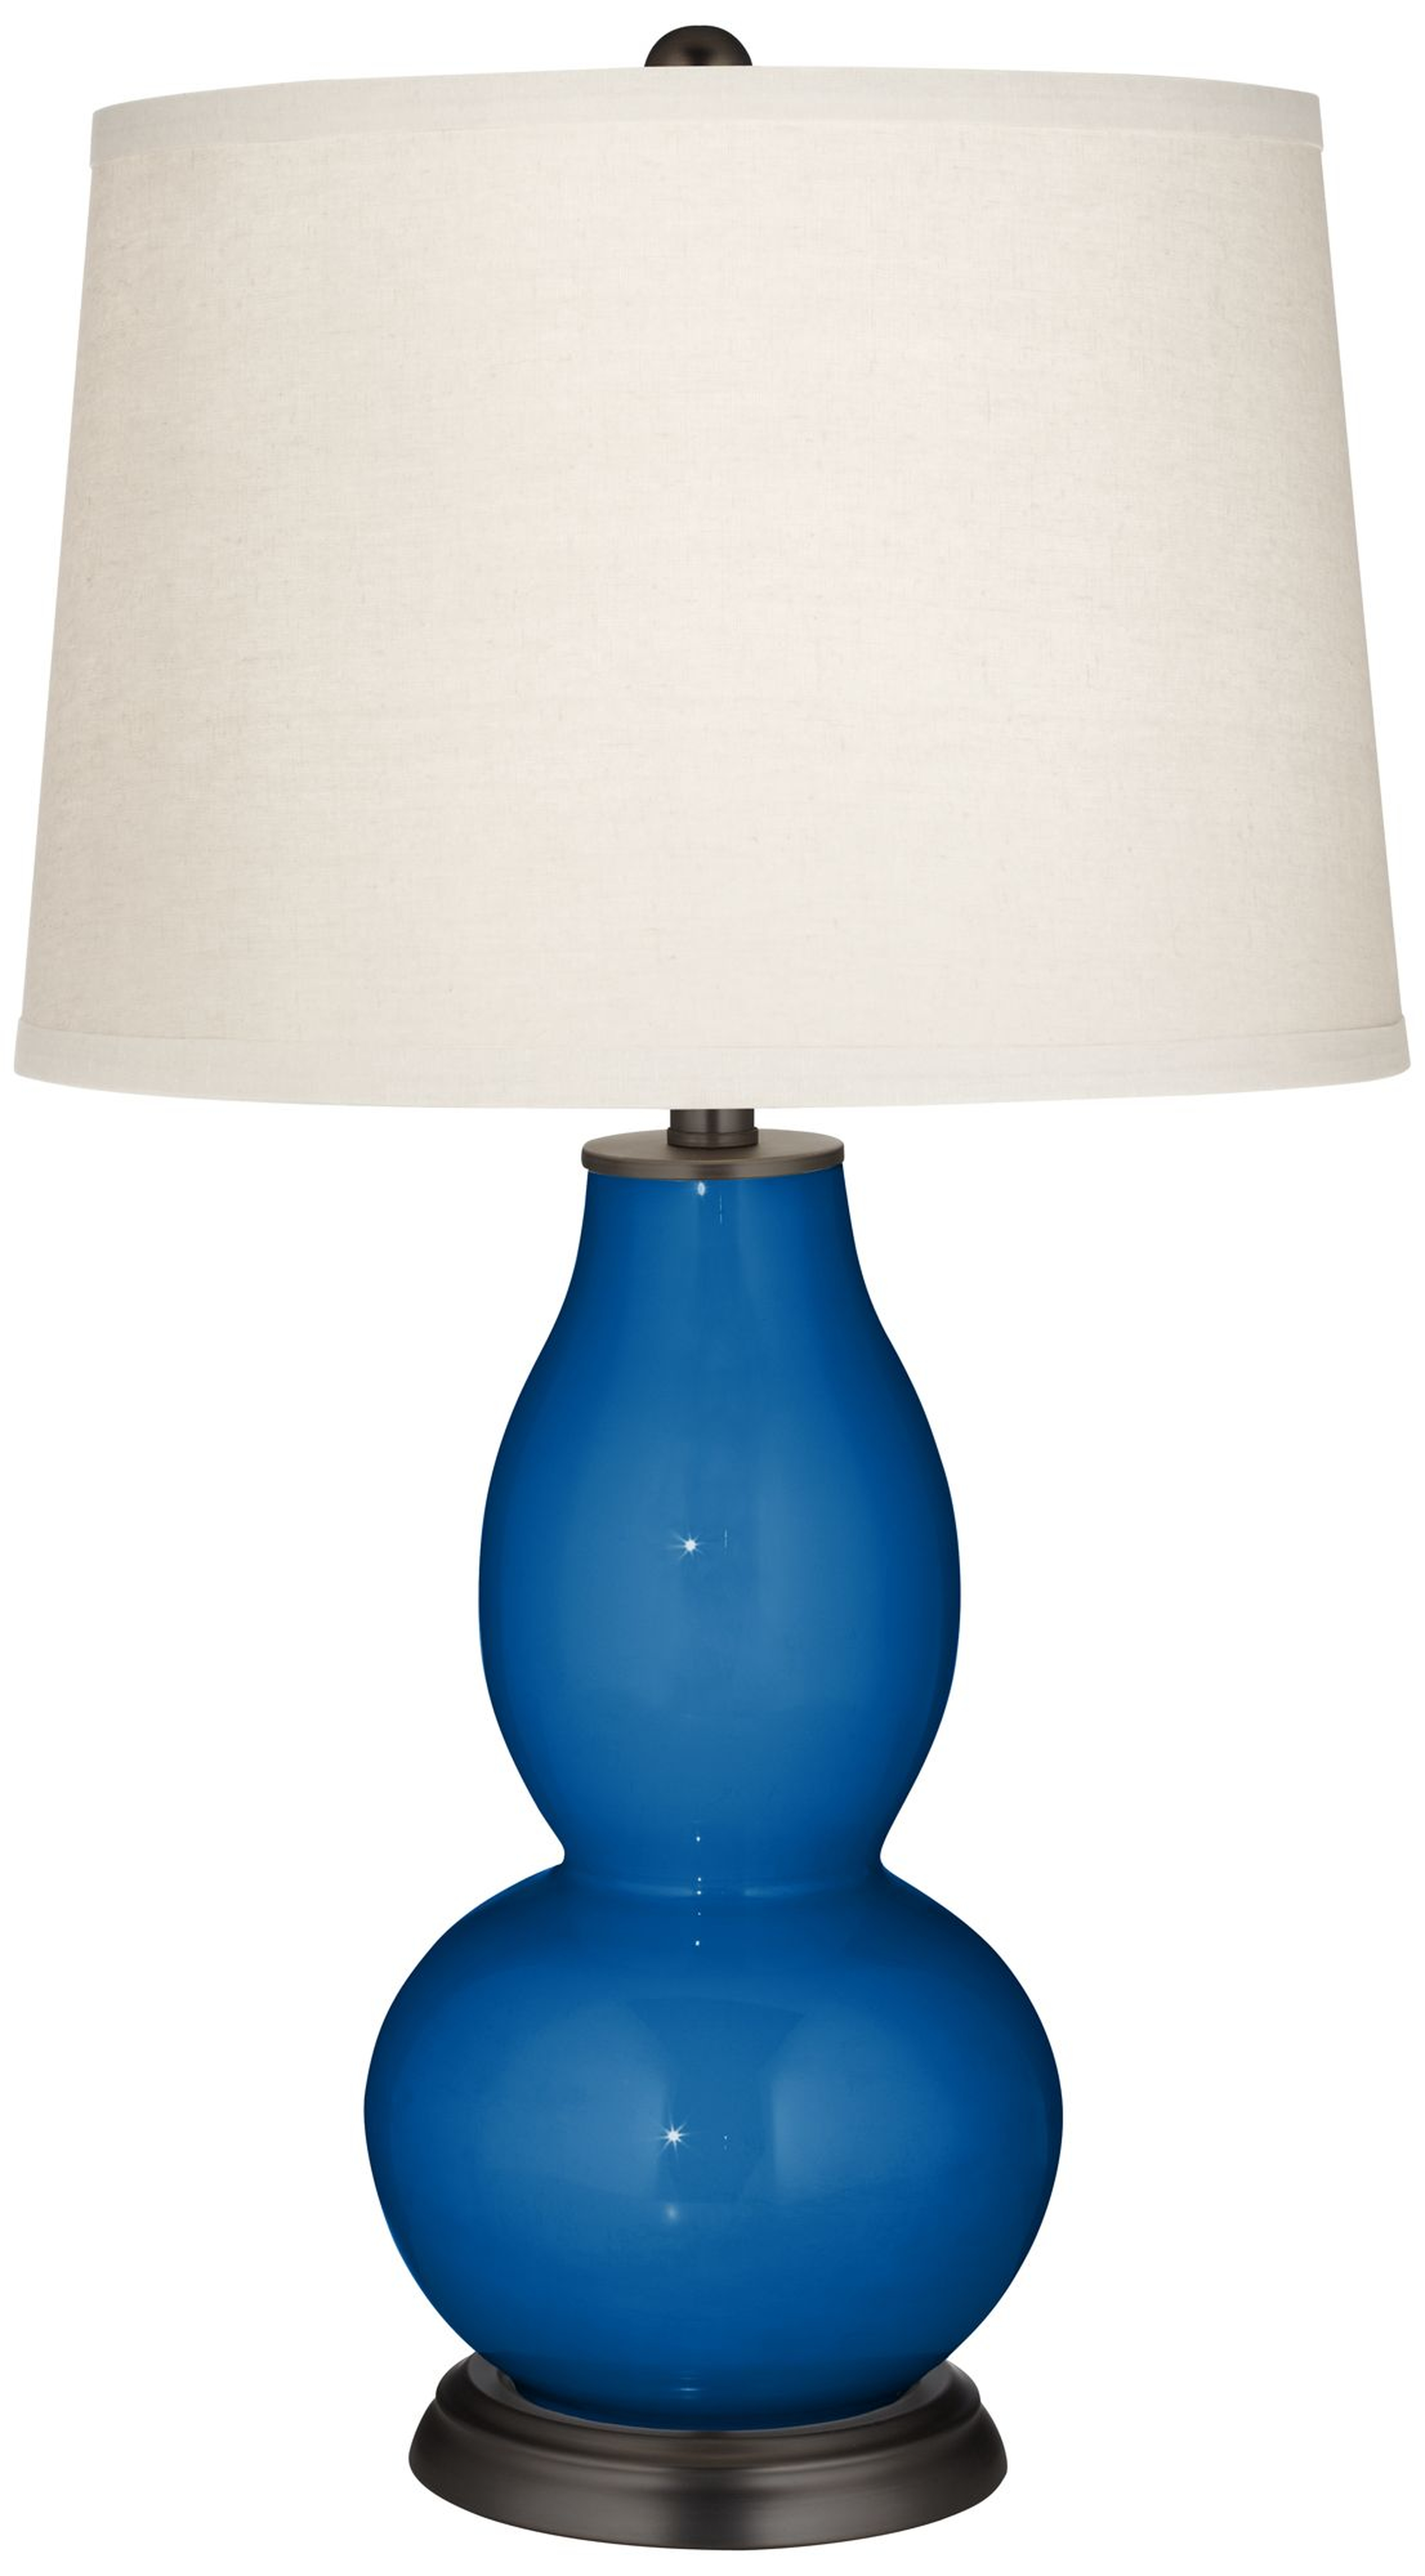 Hyper Blue Double Gourd Table Lamp - Lamps Plus